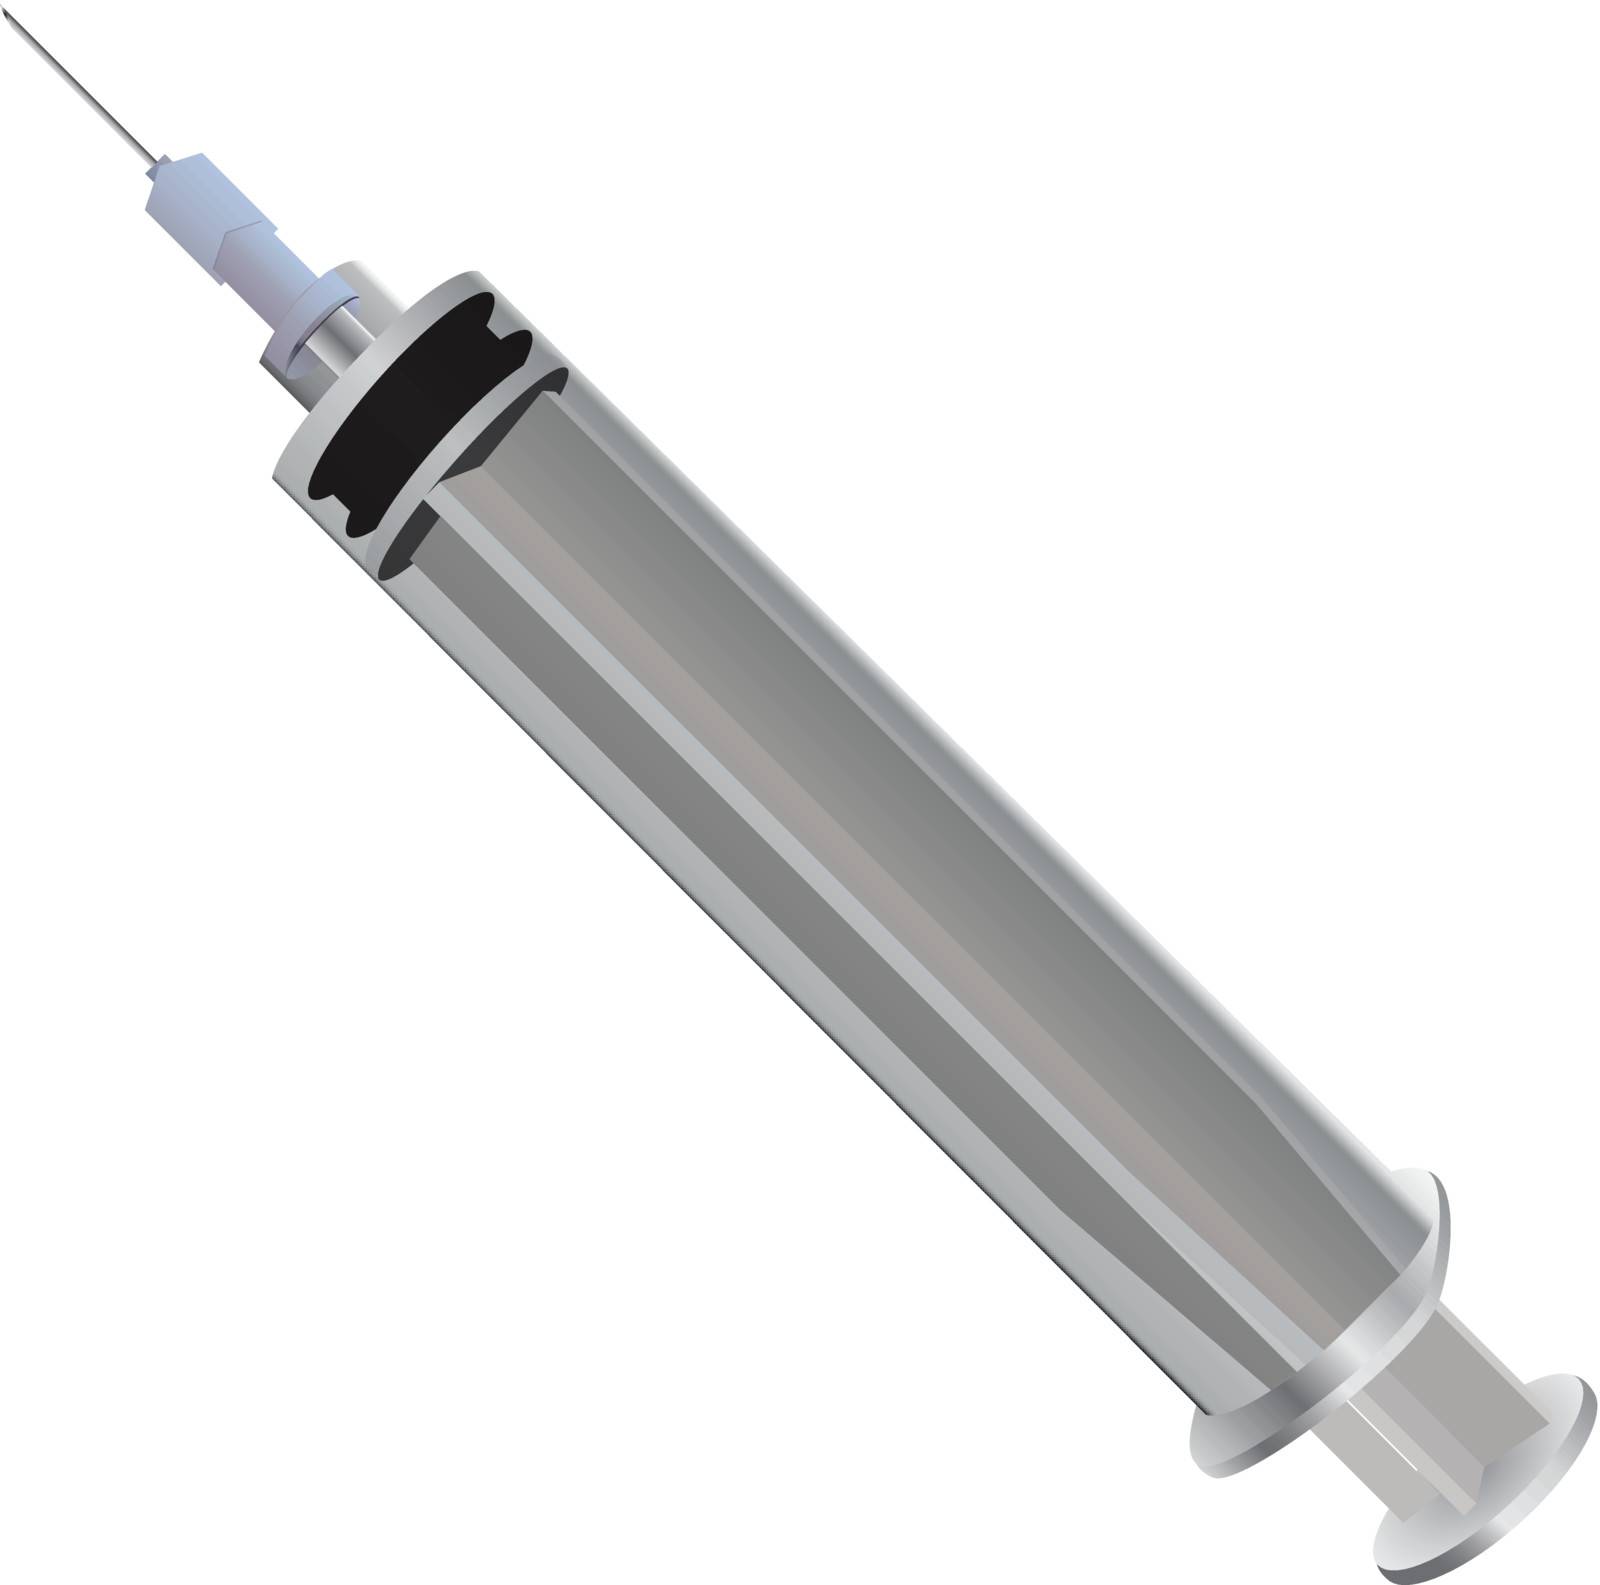 Medical syringe for injection. Disposable syringe. Vector illustration.